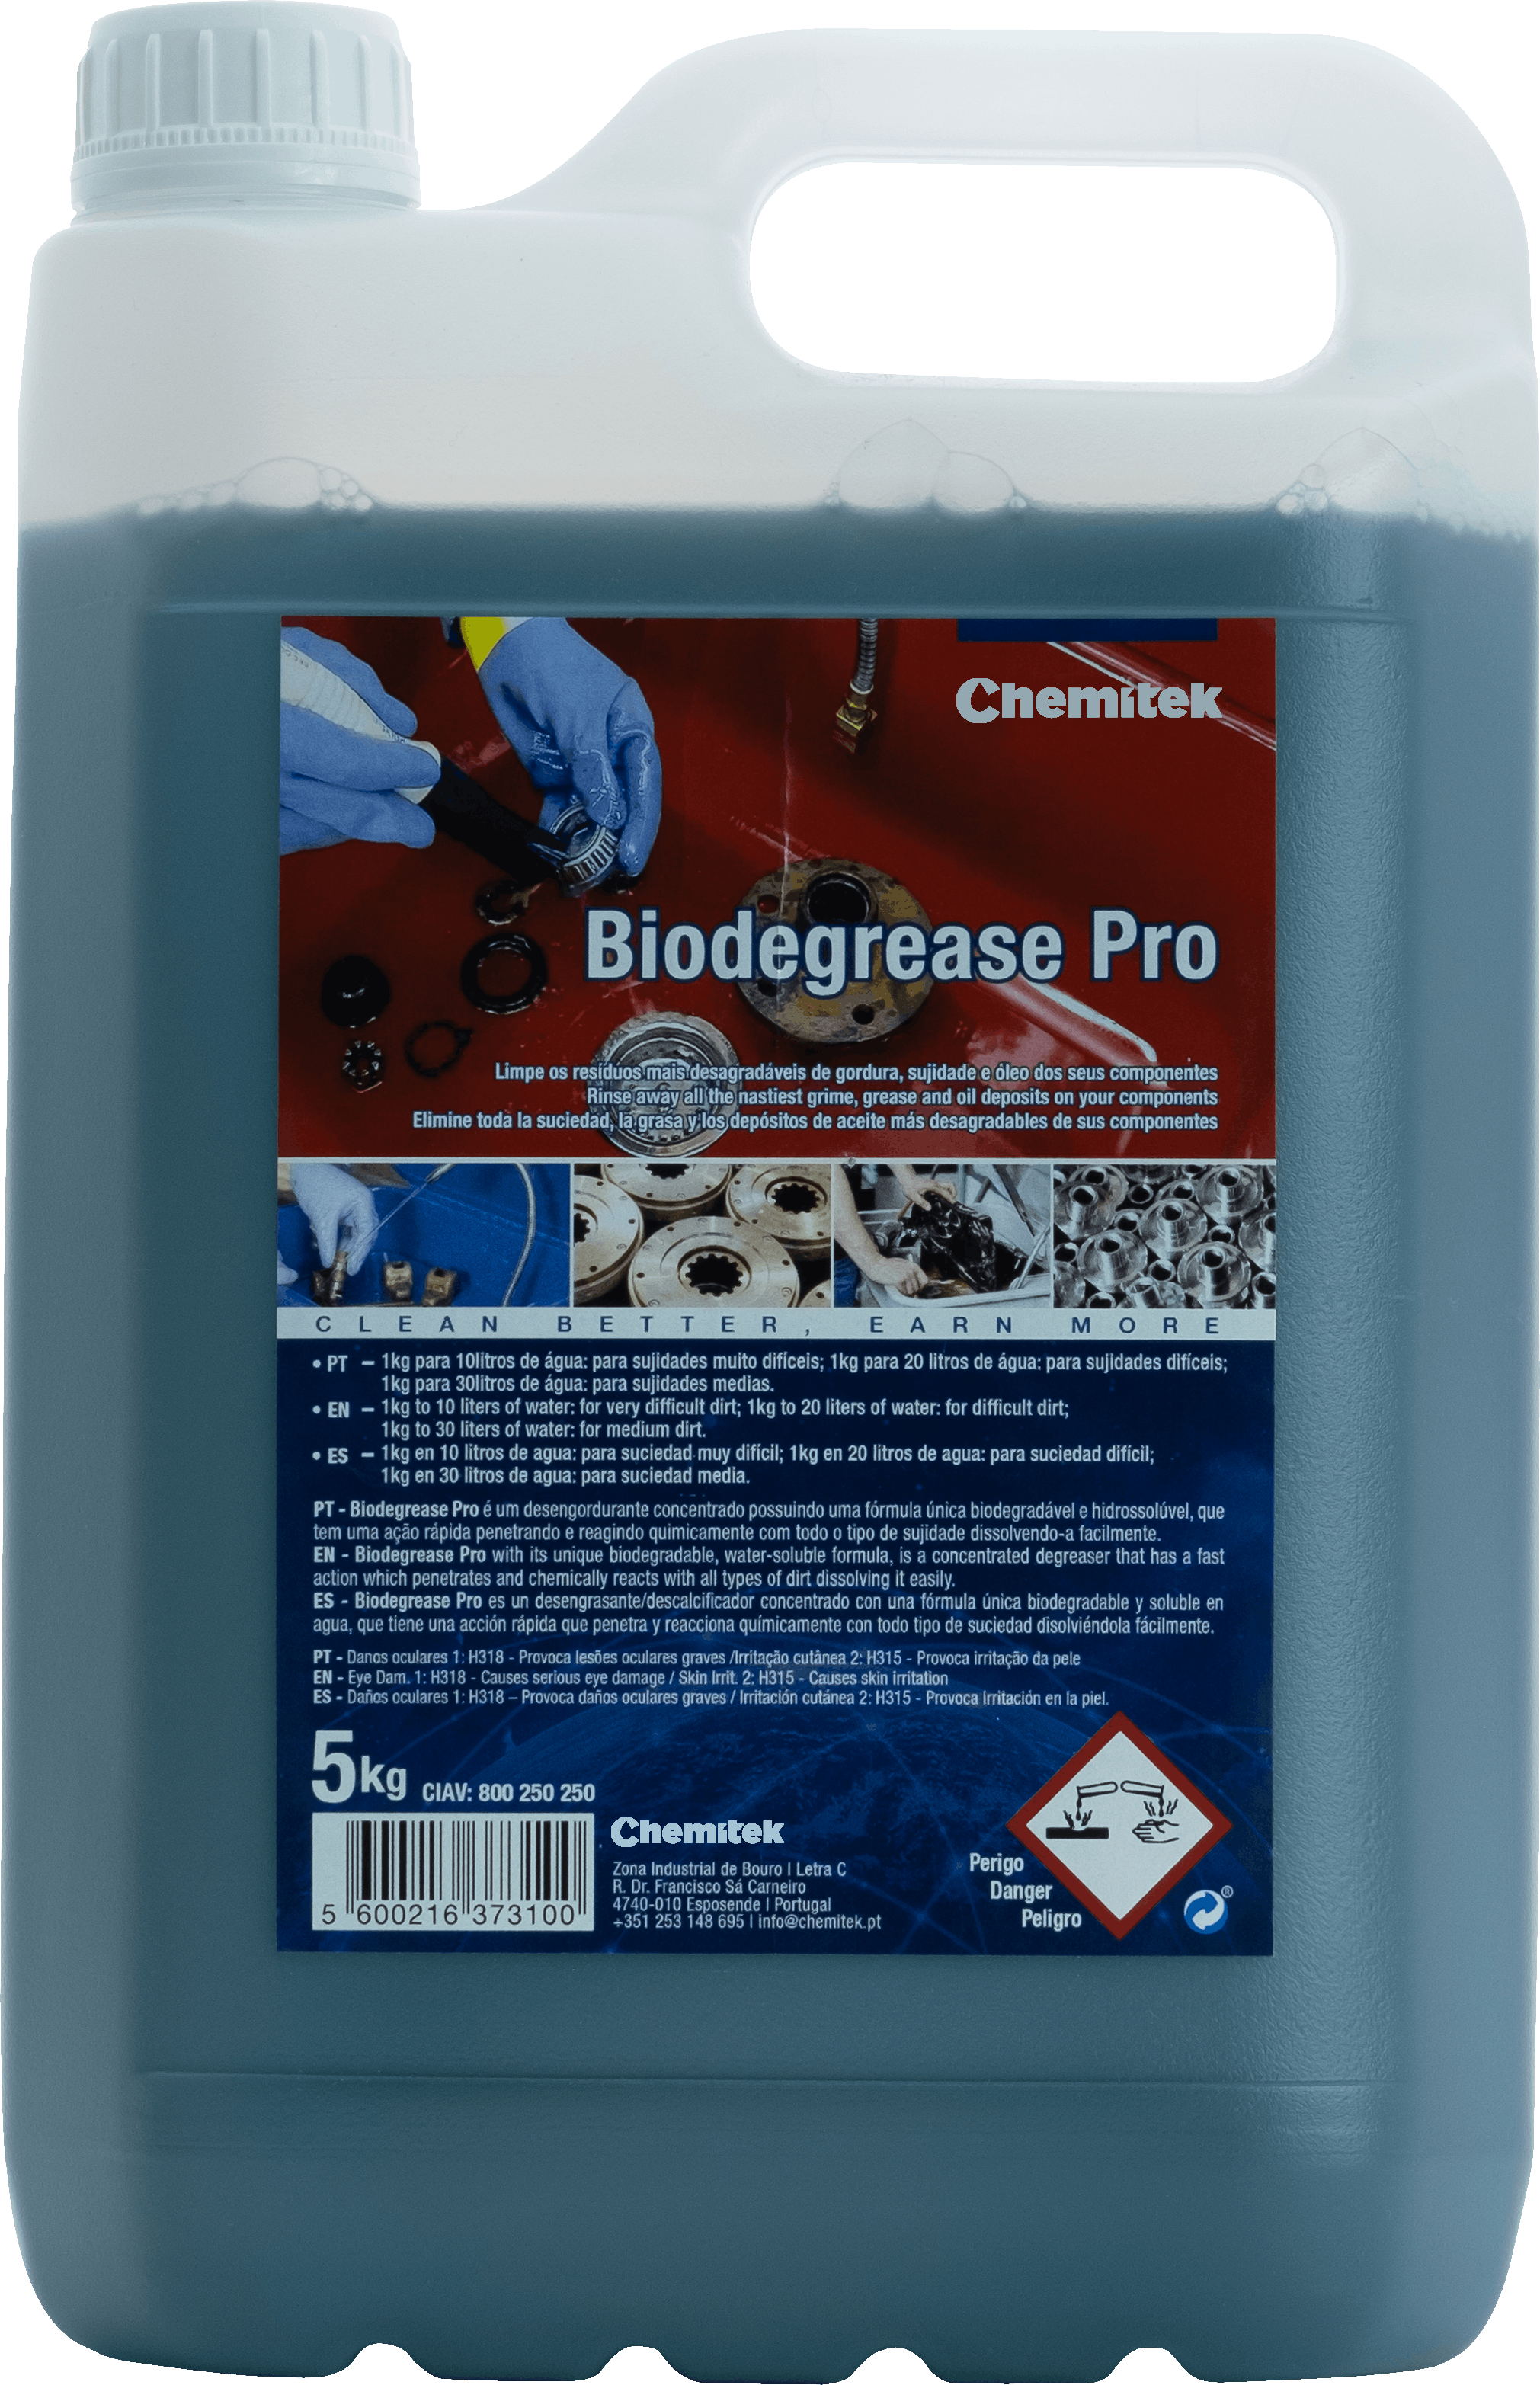 image - Biodegrease Pro